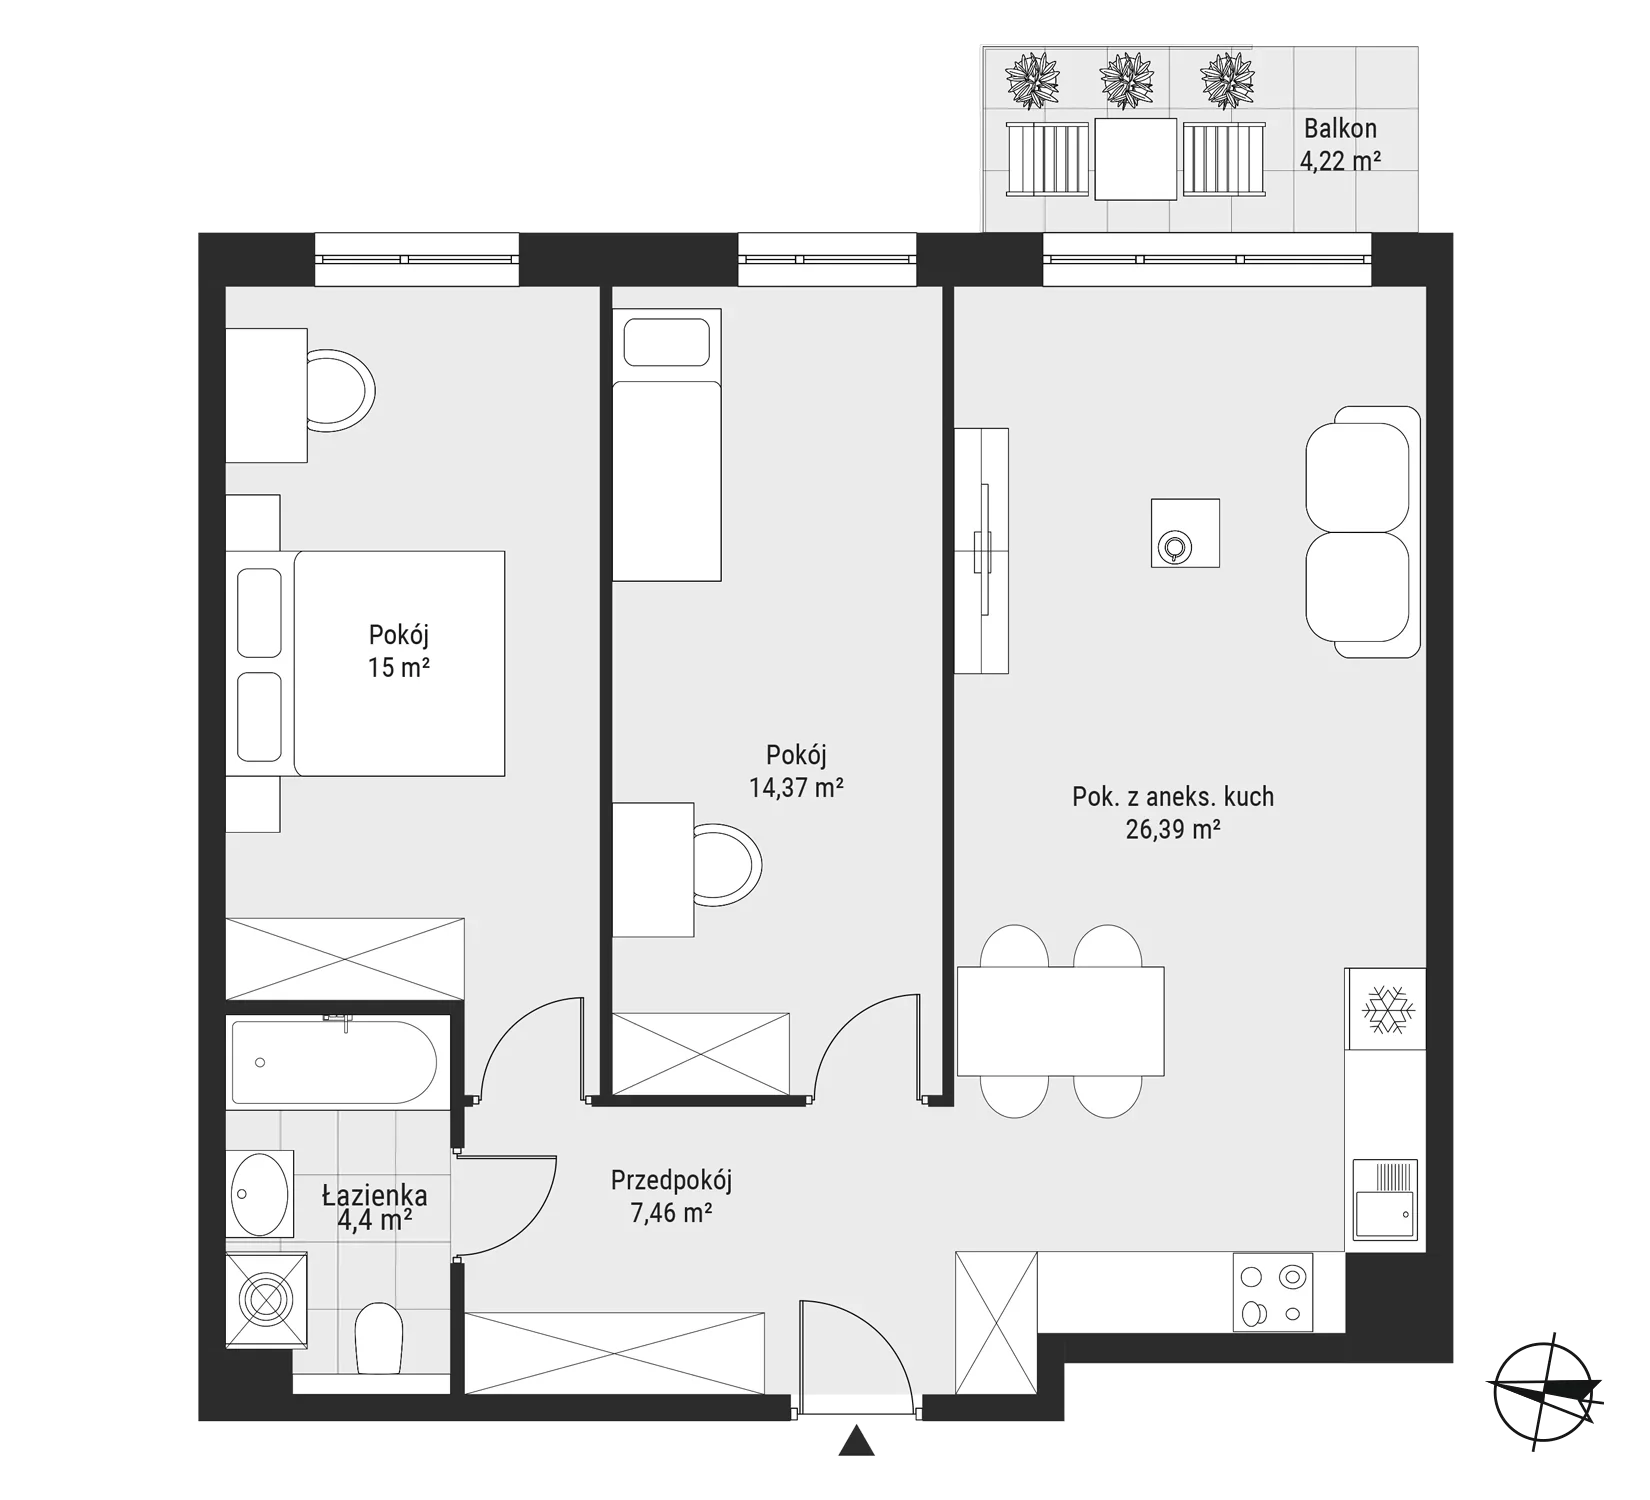 Mieszkanie 67,62 m², piętro 1, oferta nr mieszkanie 16, Bytkowska 3.0, Katowice, Wełnowiec-Józefowiec, ul. Bytkowska